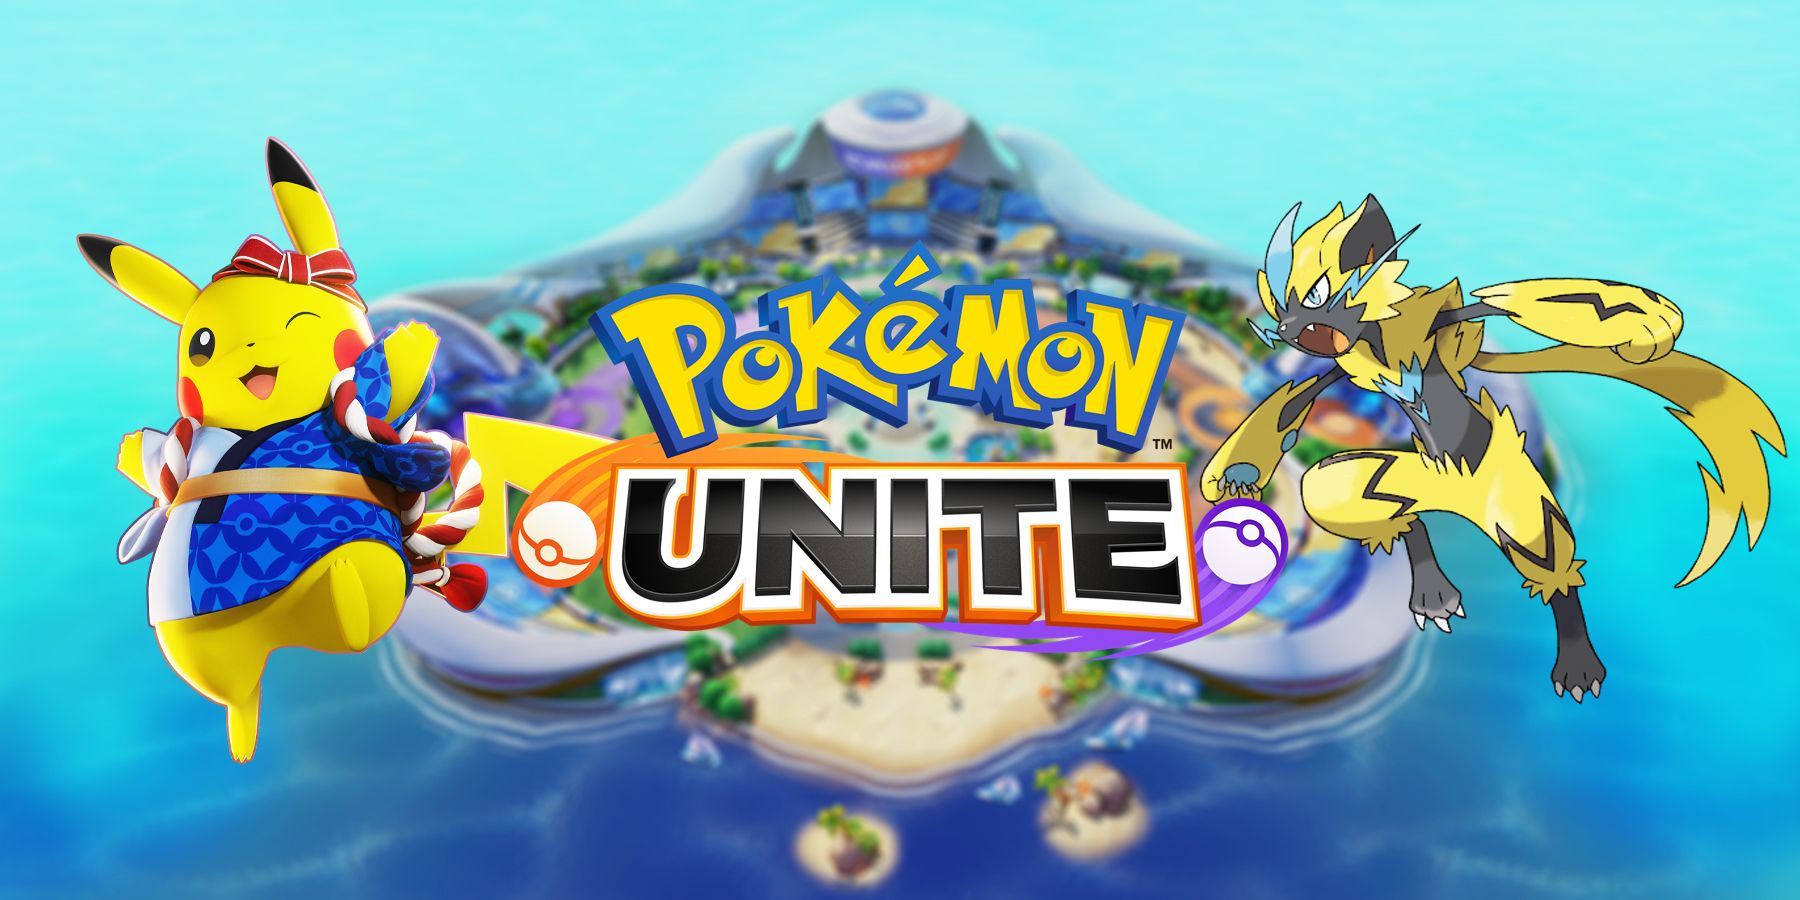 ახლა შესანიშნავი დროა Pokemon Unite-ის თამაშის დასაწყებად